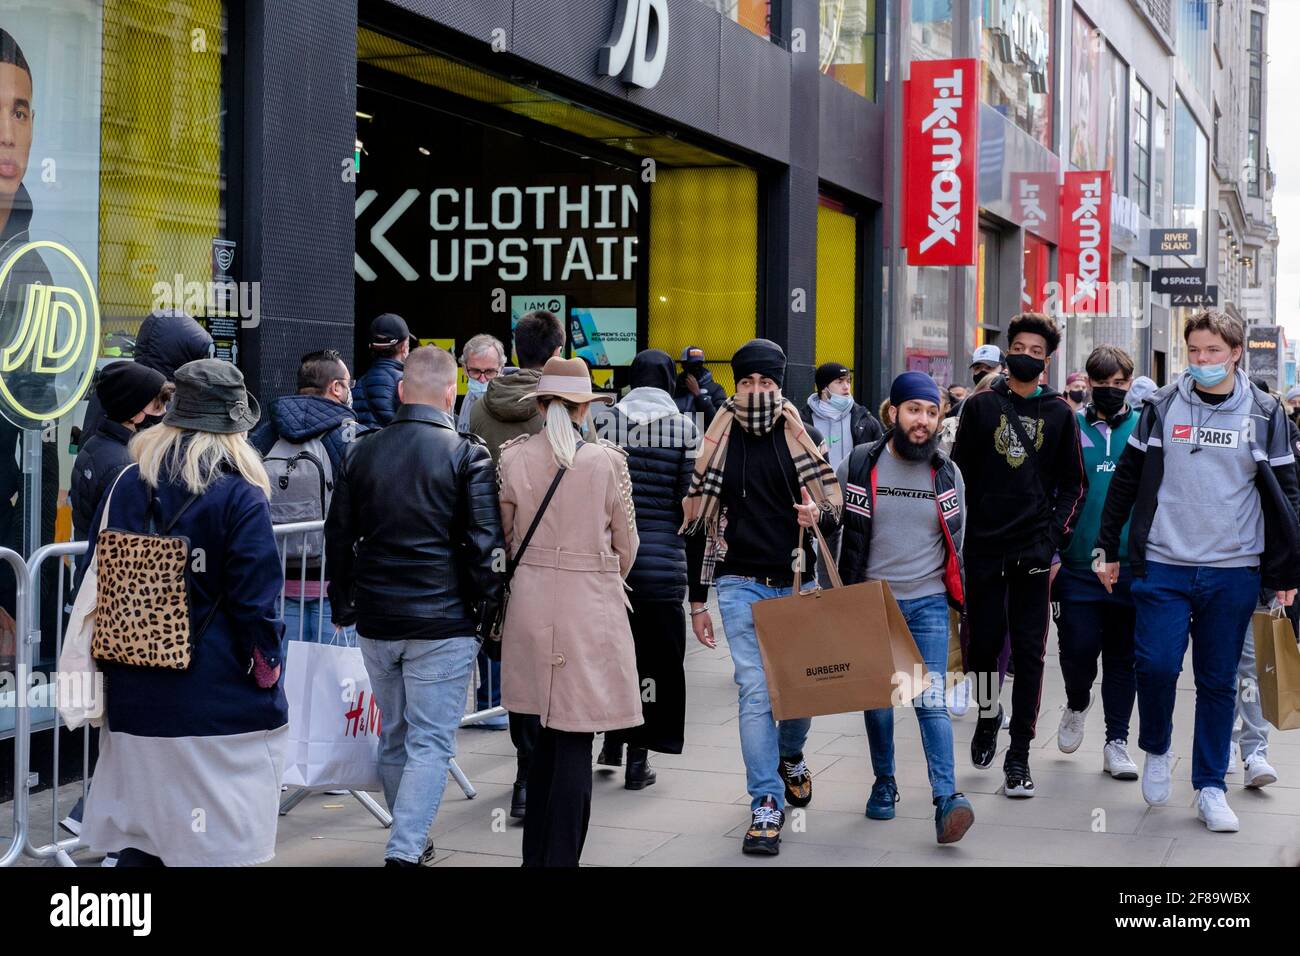 12 avril 2021, Shoppers on Oxford Street, Londres à la suite de l'assouplissement des restrictions Covid par le gouvernement britannique, permettant la réouverture de magasins de détail non essentiels en Angleterre. Des files d'attente se sont formées à l'extérieur de nombreux magasins populaires, les magasins ayant accueilli les clients après plusieurs mois de fermeture. Banque D'Images